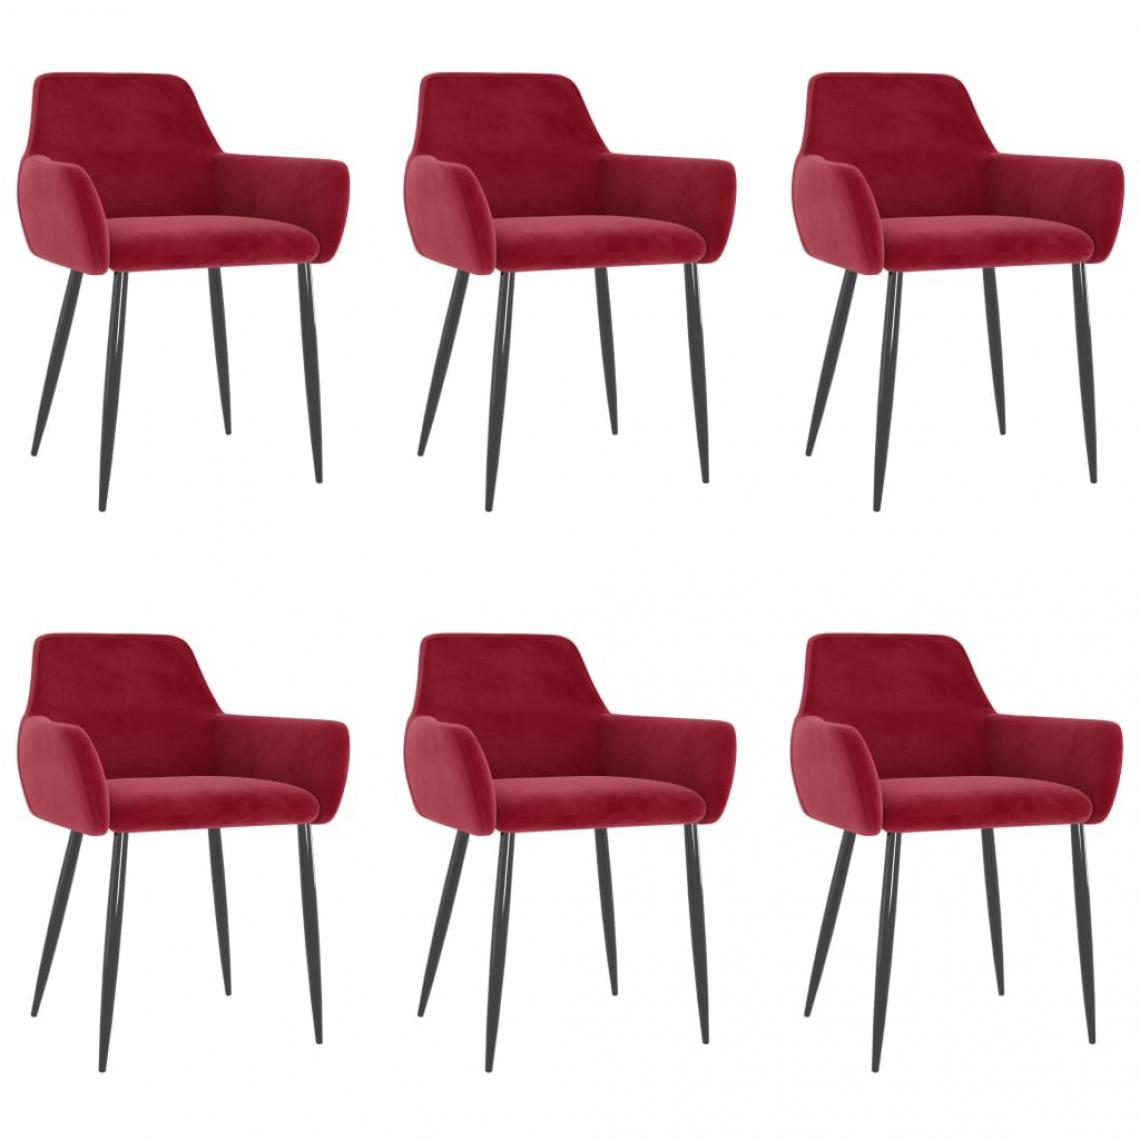 Decoshop26 - Lot de 6 chaises de salle à manger cuisine design moderne velours rouge bordeaux CDS022829 - Chaises